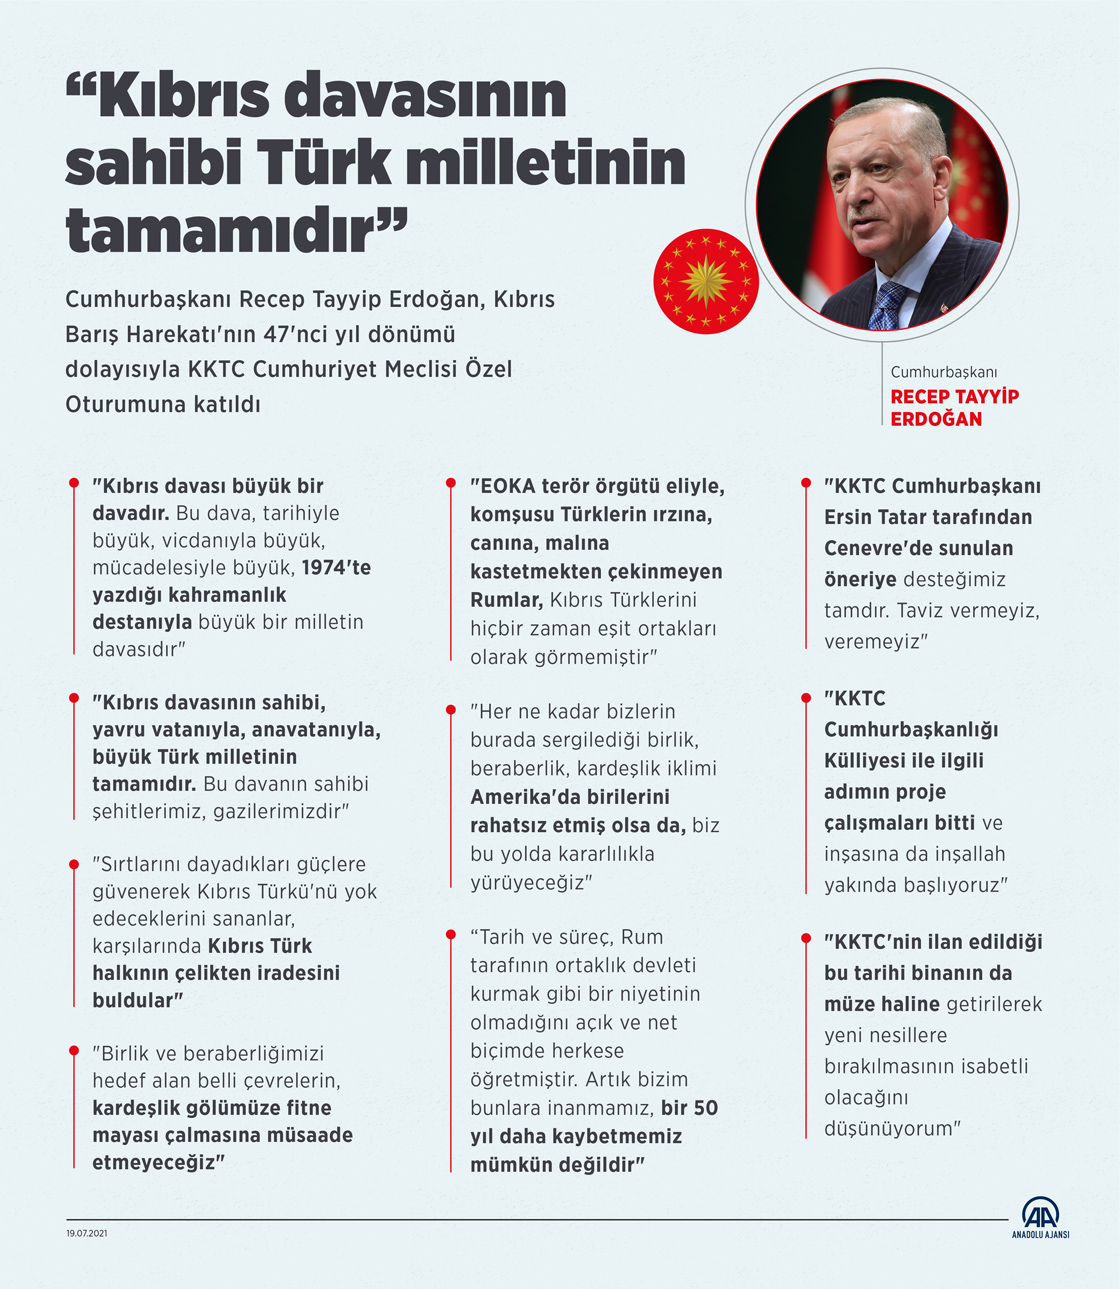 Cumhurbaşkanı Recep Tayyip Erdoğan KKTC Cumhuriyet Meclisi Özel Oturumuna katıldı